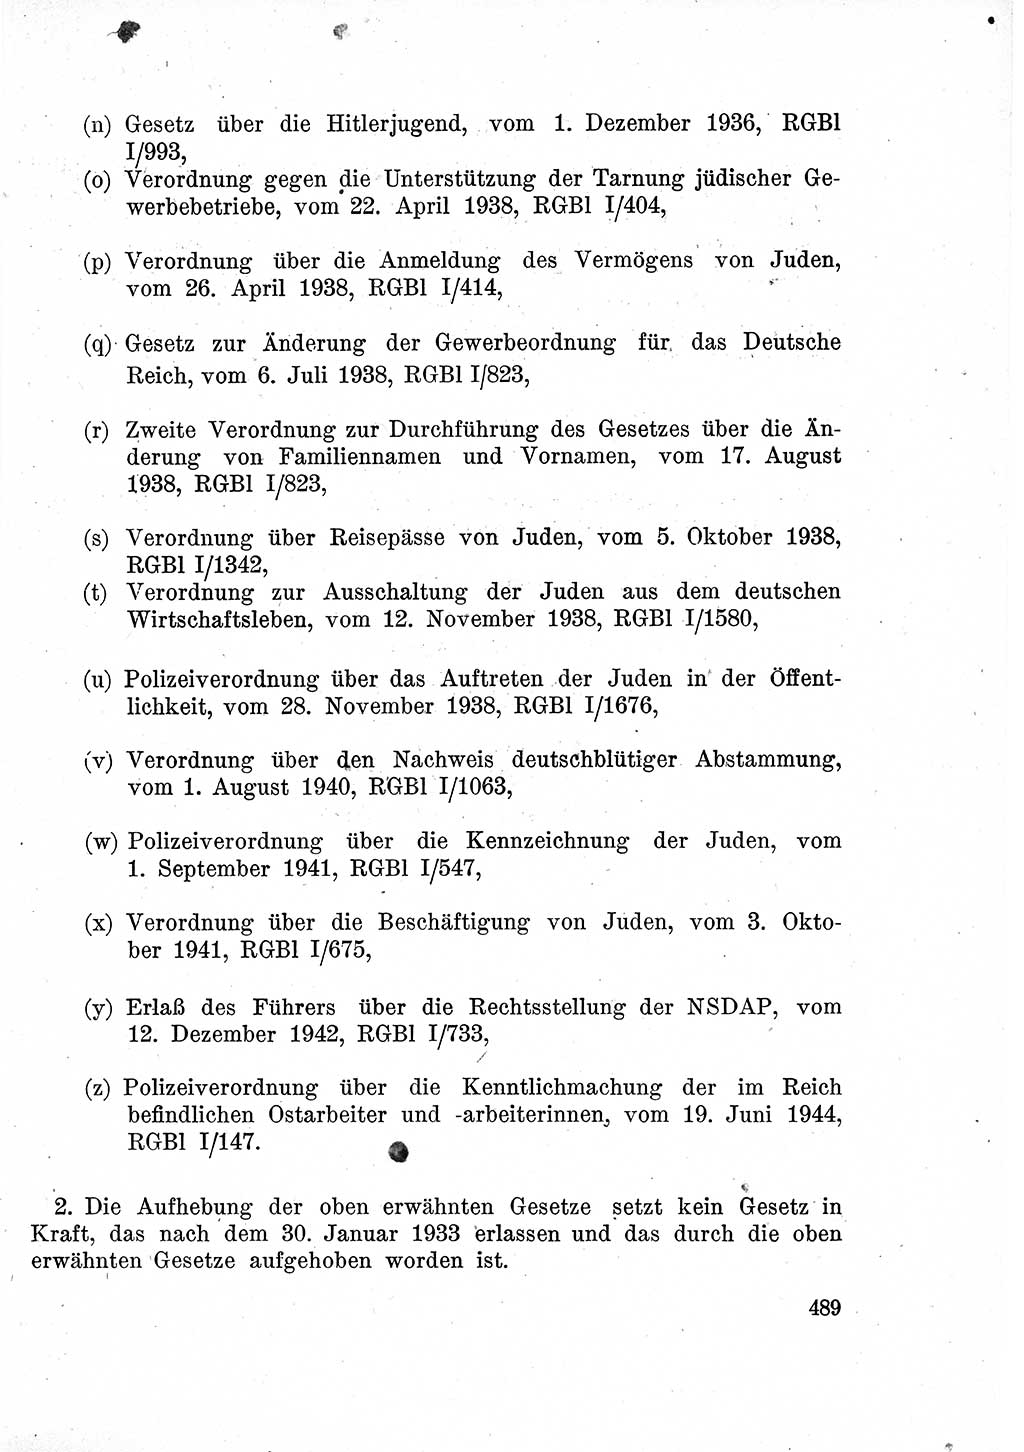 Das Recht der Besatzungsmacht (Deutschland), Proklamationen, Deklerationen, Verordnungen, Gesetze und Bekanntmachungen 1947, Seite 489 (R. Bes. Dtl. 1947, S. 489)